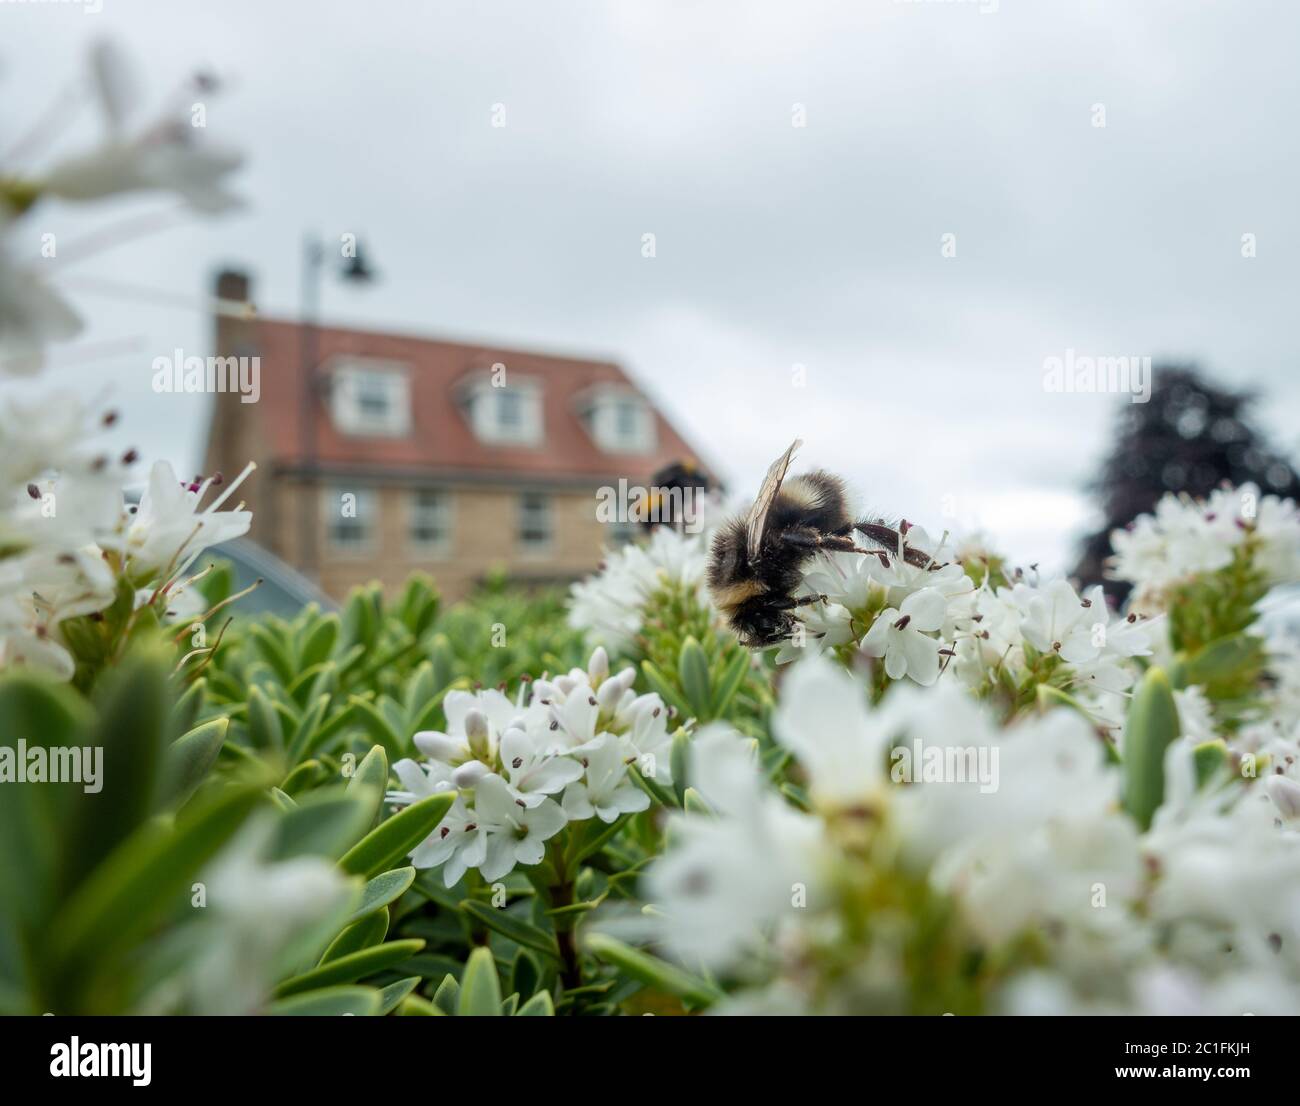 Faune urbaine britannique : les bourdons rassemblent le nectar et pollinisent un arbuste d'hébe dans un jardin à l'avant. West Yorkshire, Royaume-Uni Banque D'Images